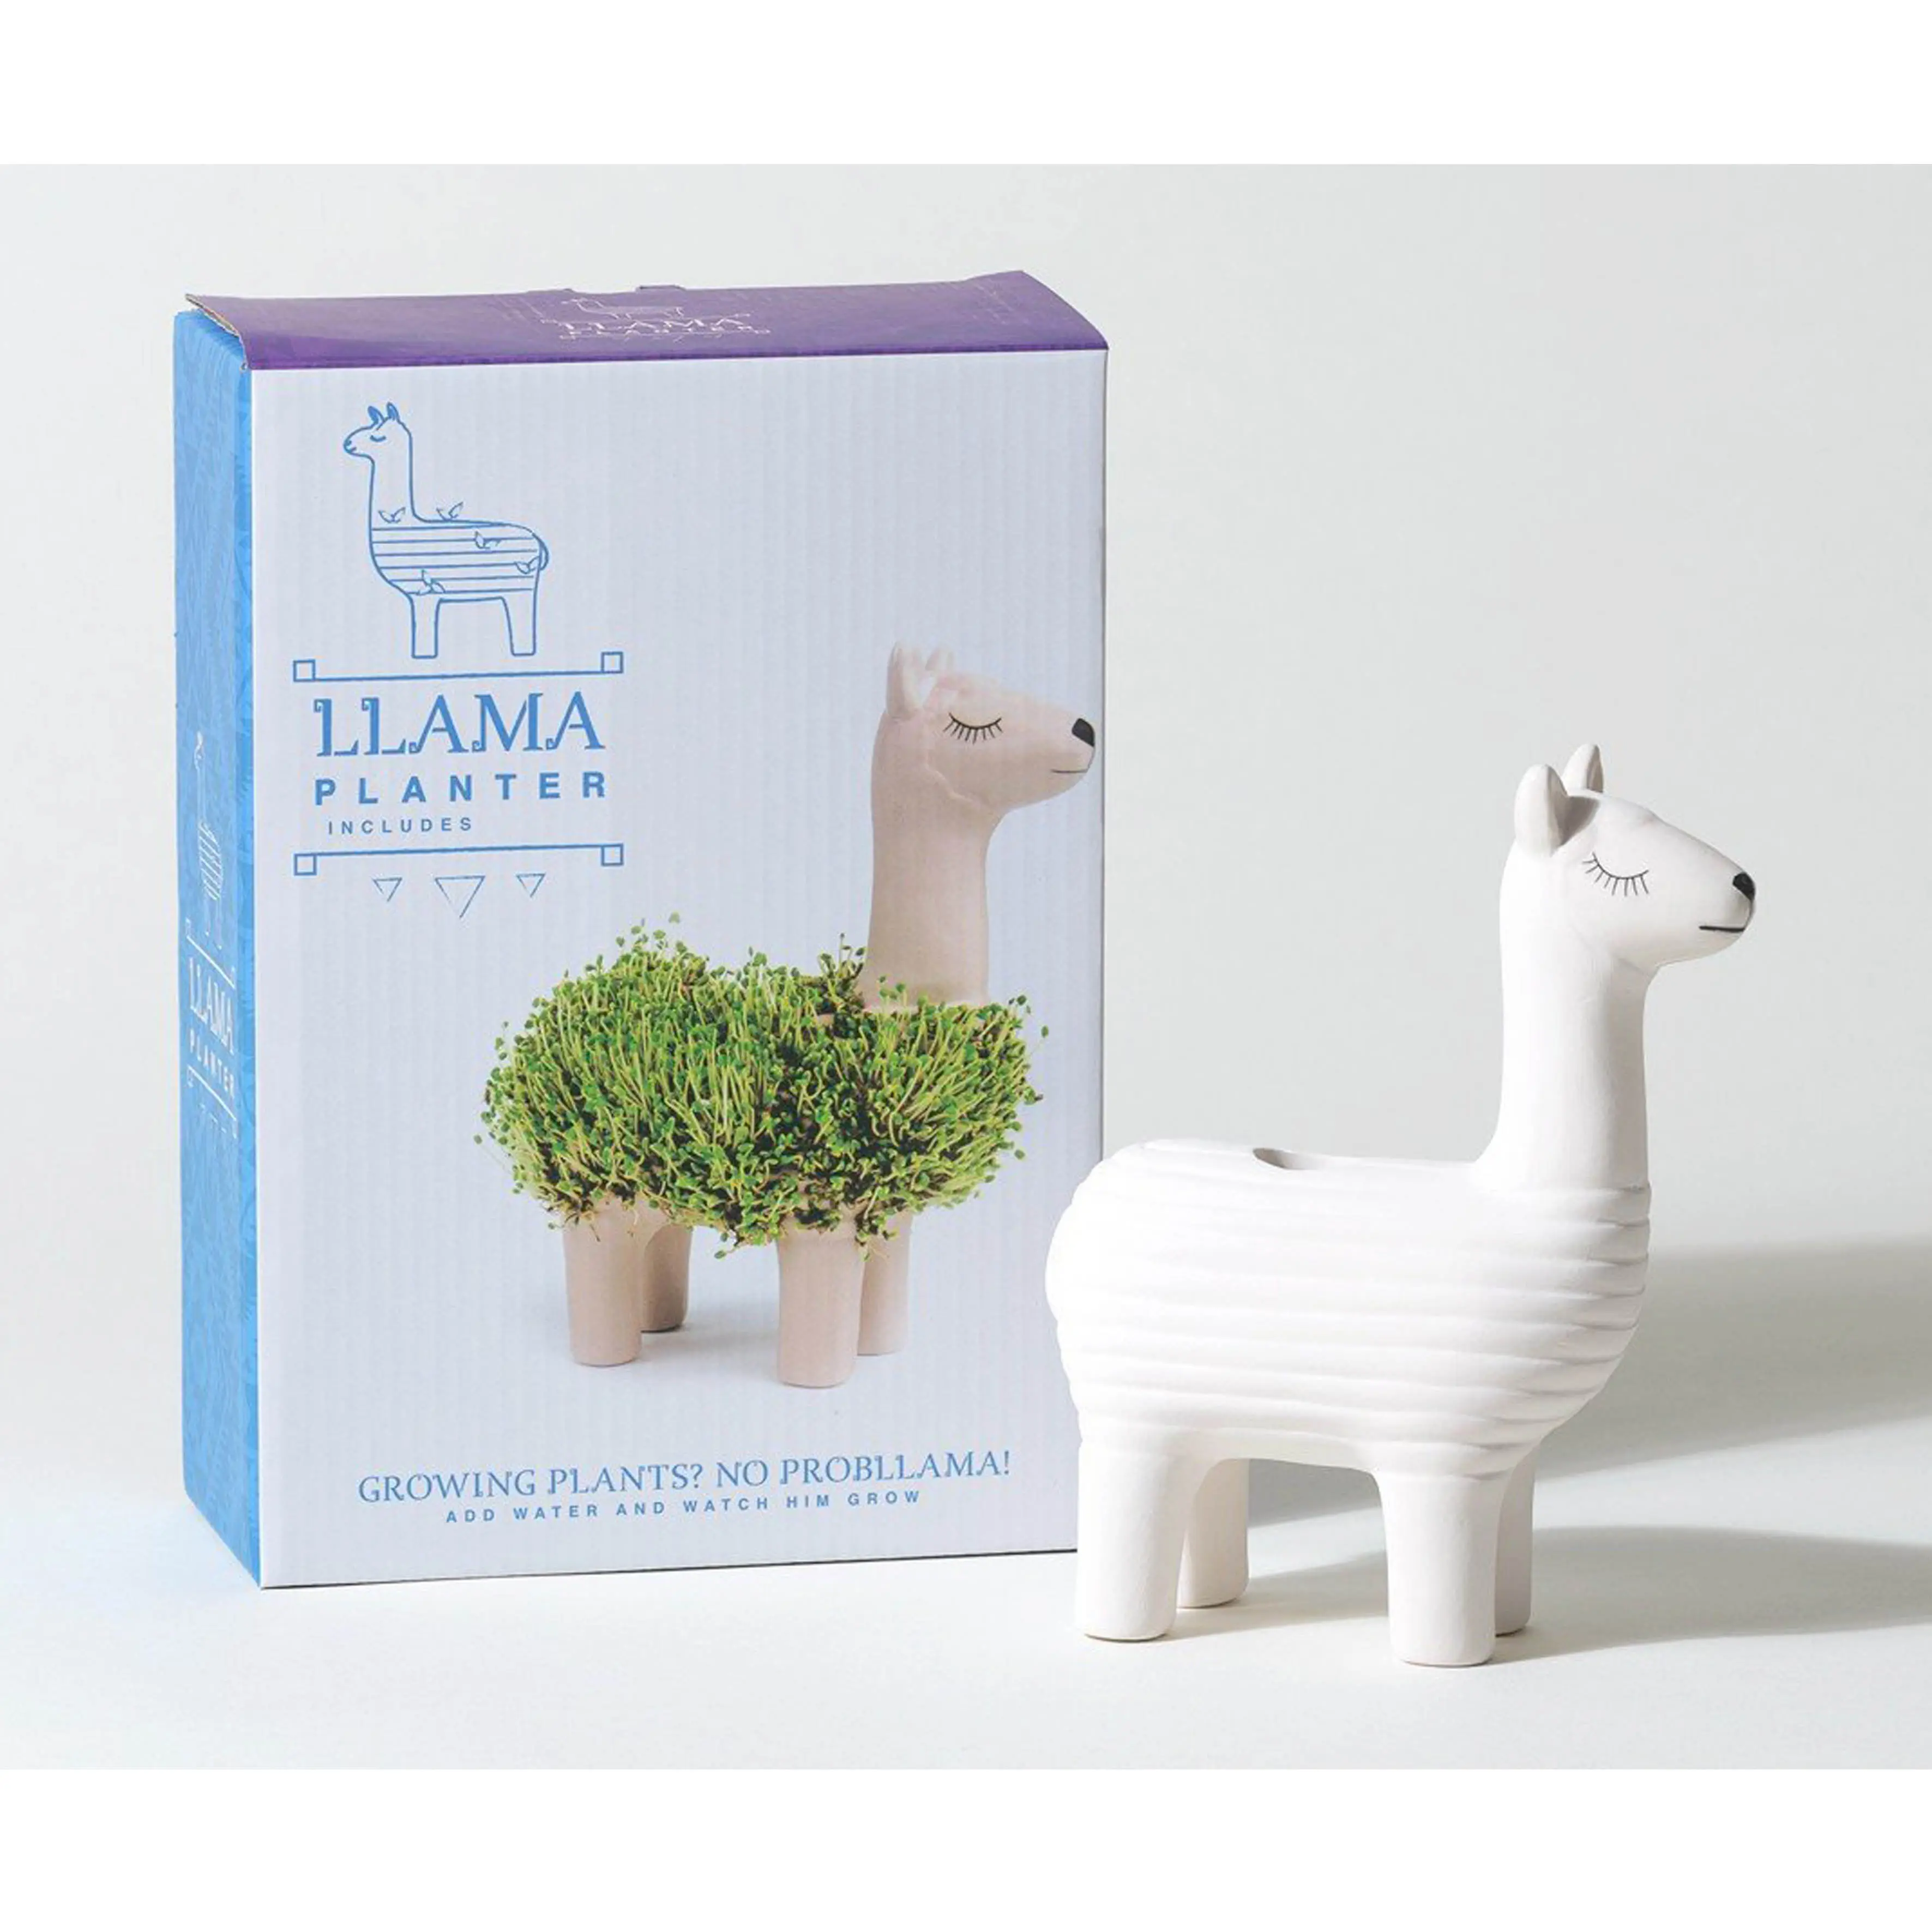 Souvenirs Geschenk Lama benutzer definierte Chia Haustier Pflanzer Chia Planta bles Zimmer pflanze wachsen Kit hohe Qualität